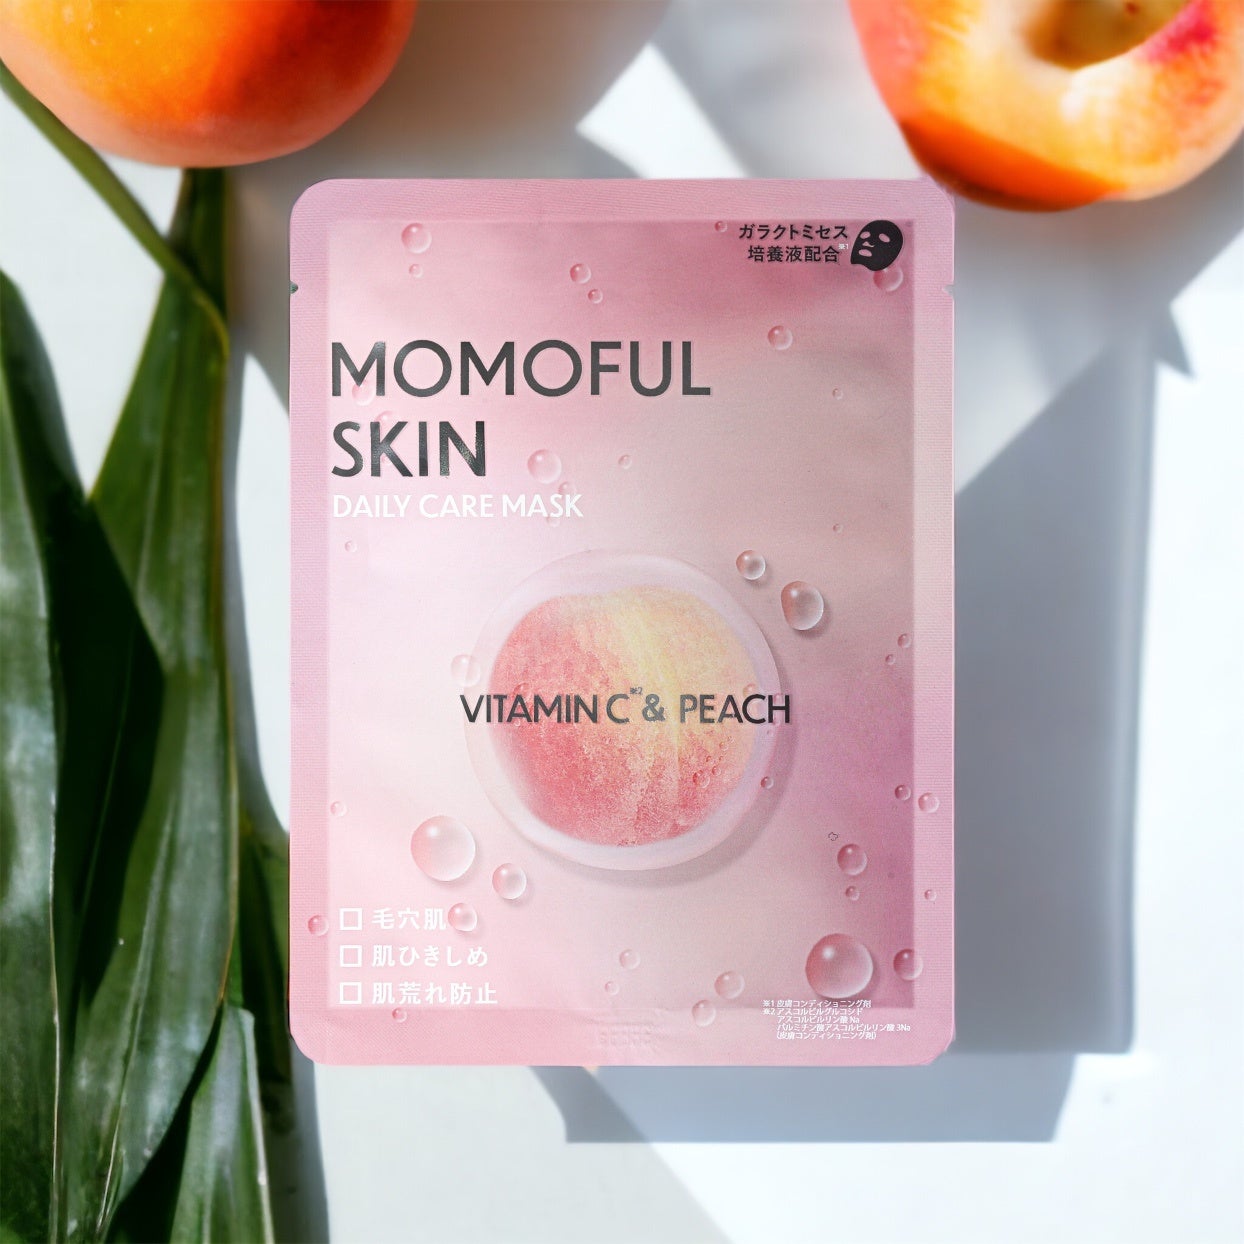 モモフル、美と健康に新たなる一手 "momoful skin" ブランドの誕生を発表 ─ 第一弾としてフェイスマスクが新...